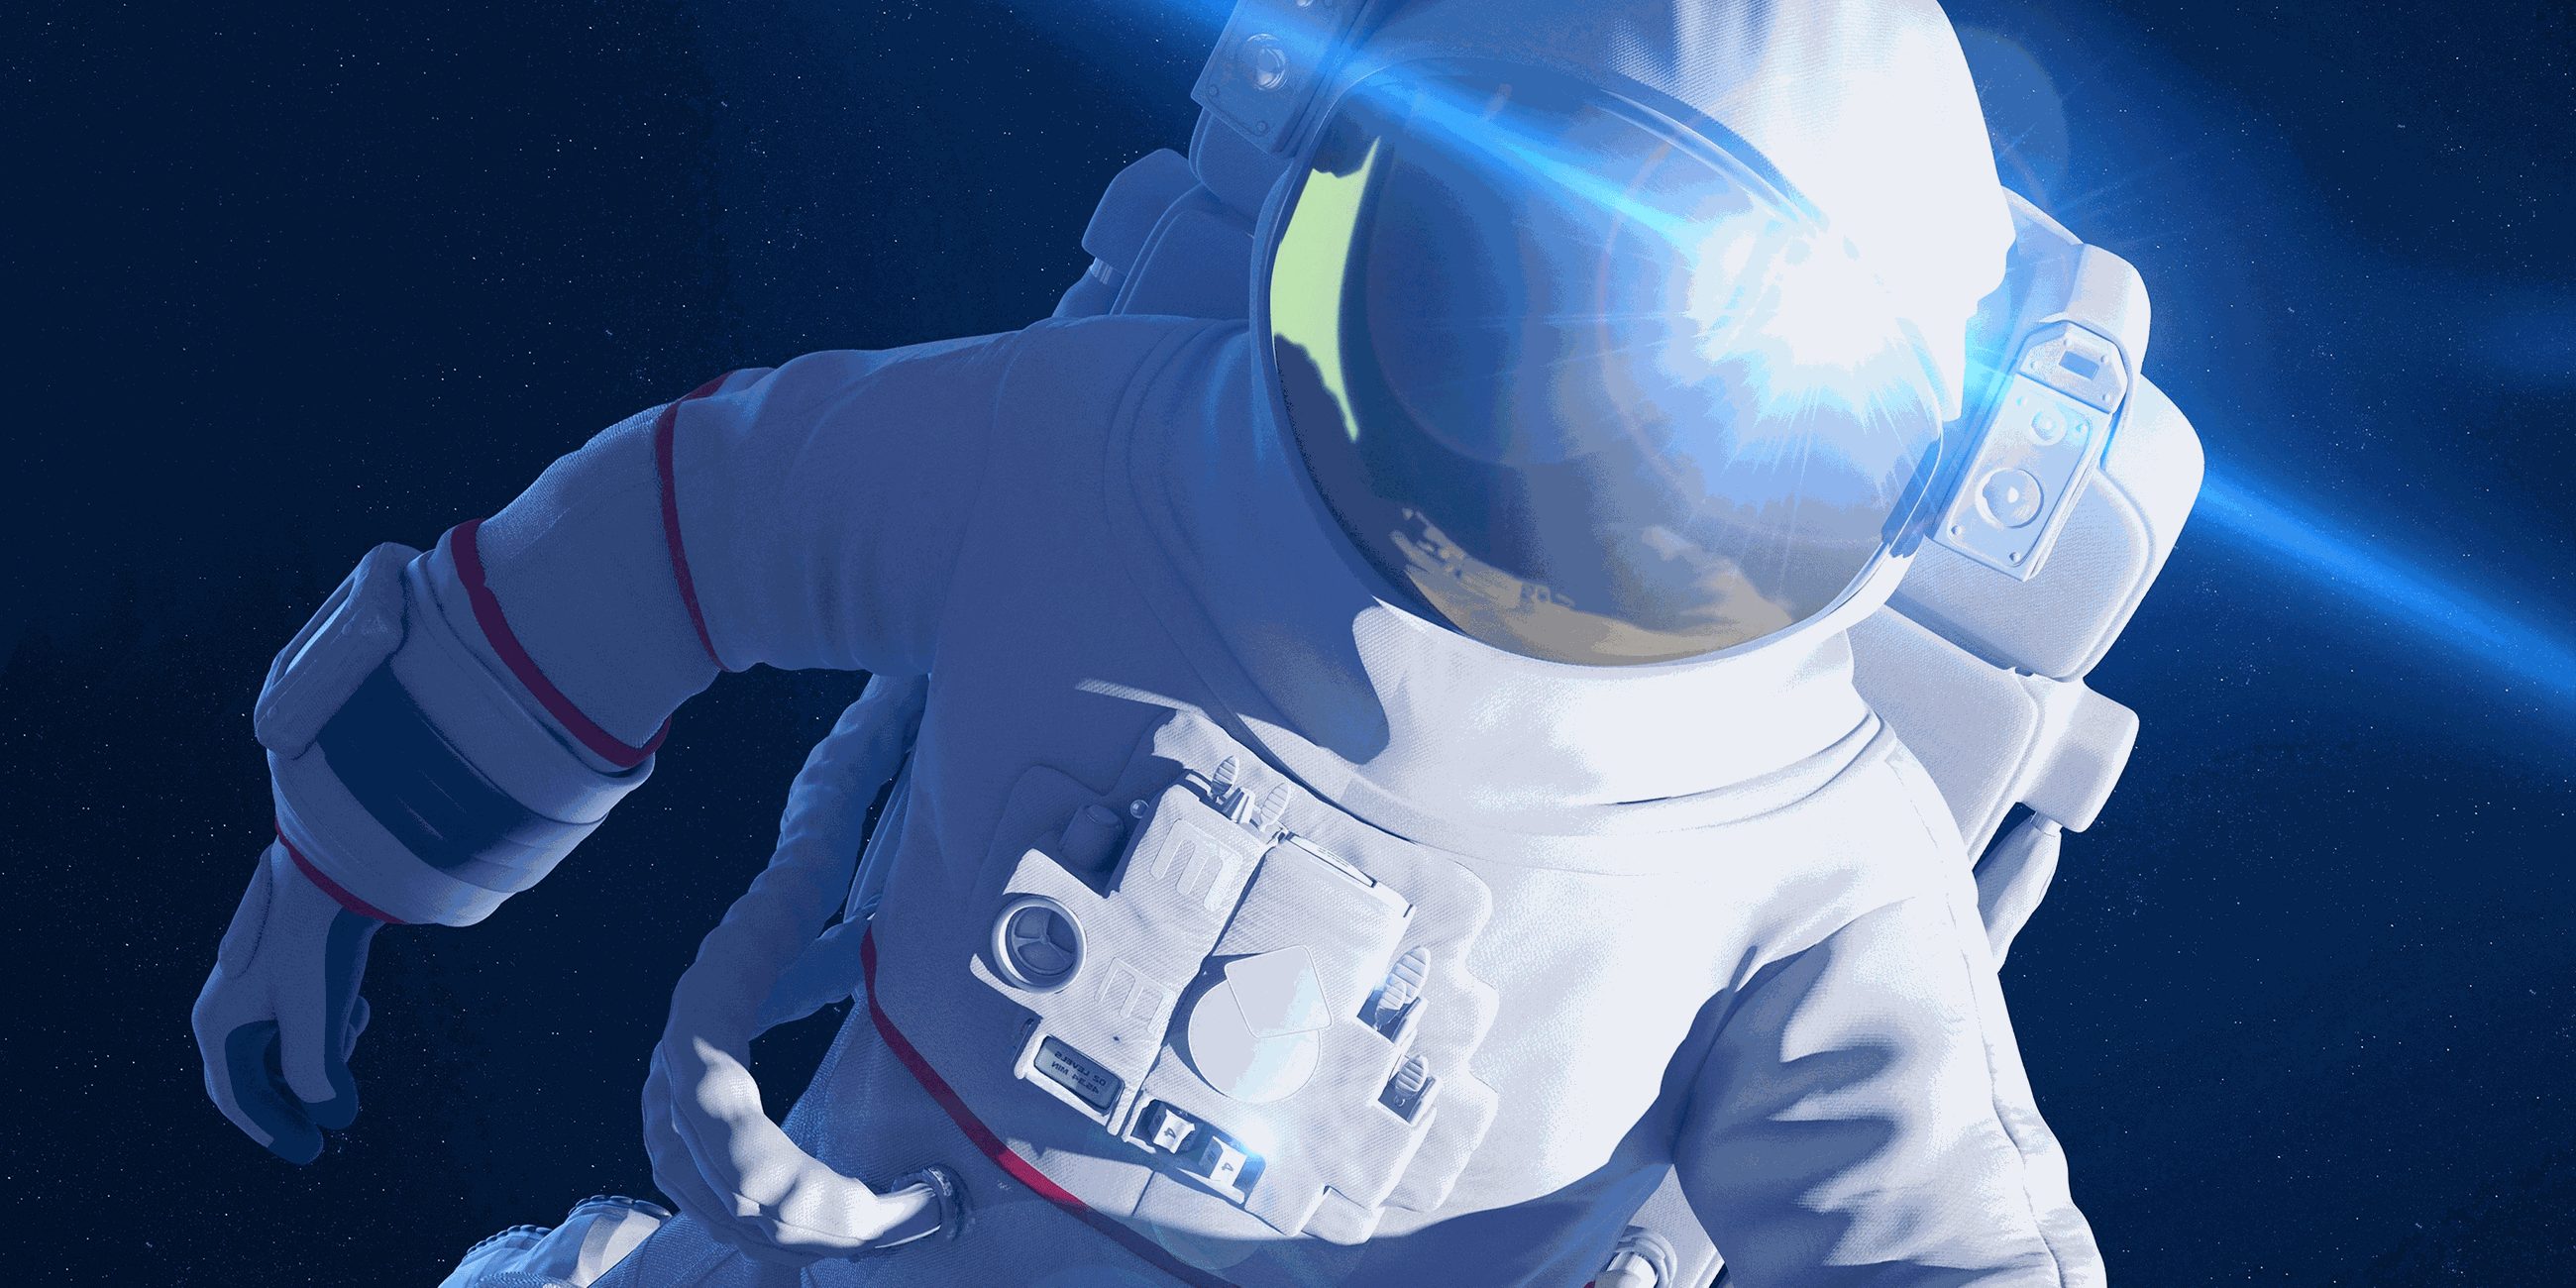 Astronaut im Weltraum